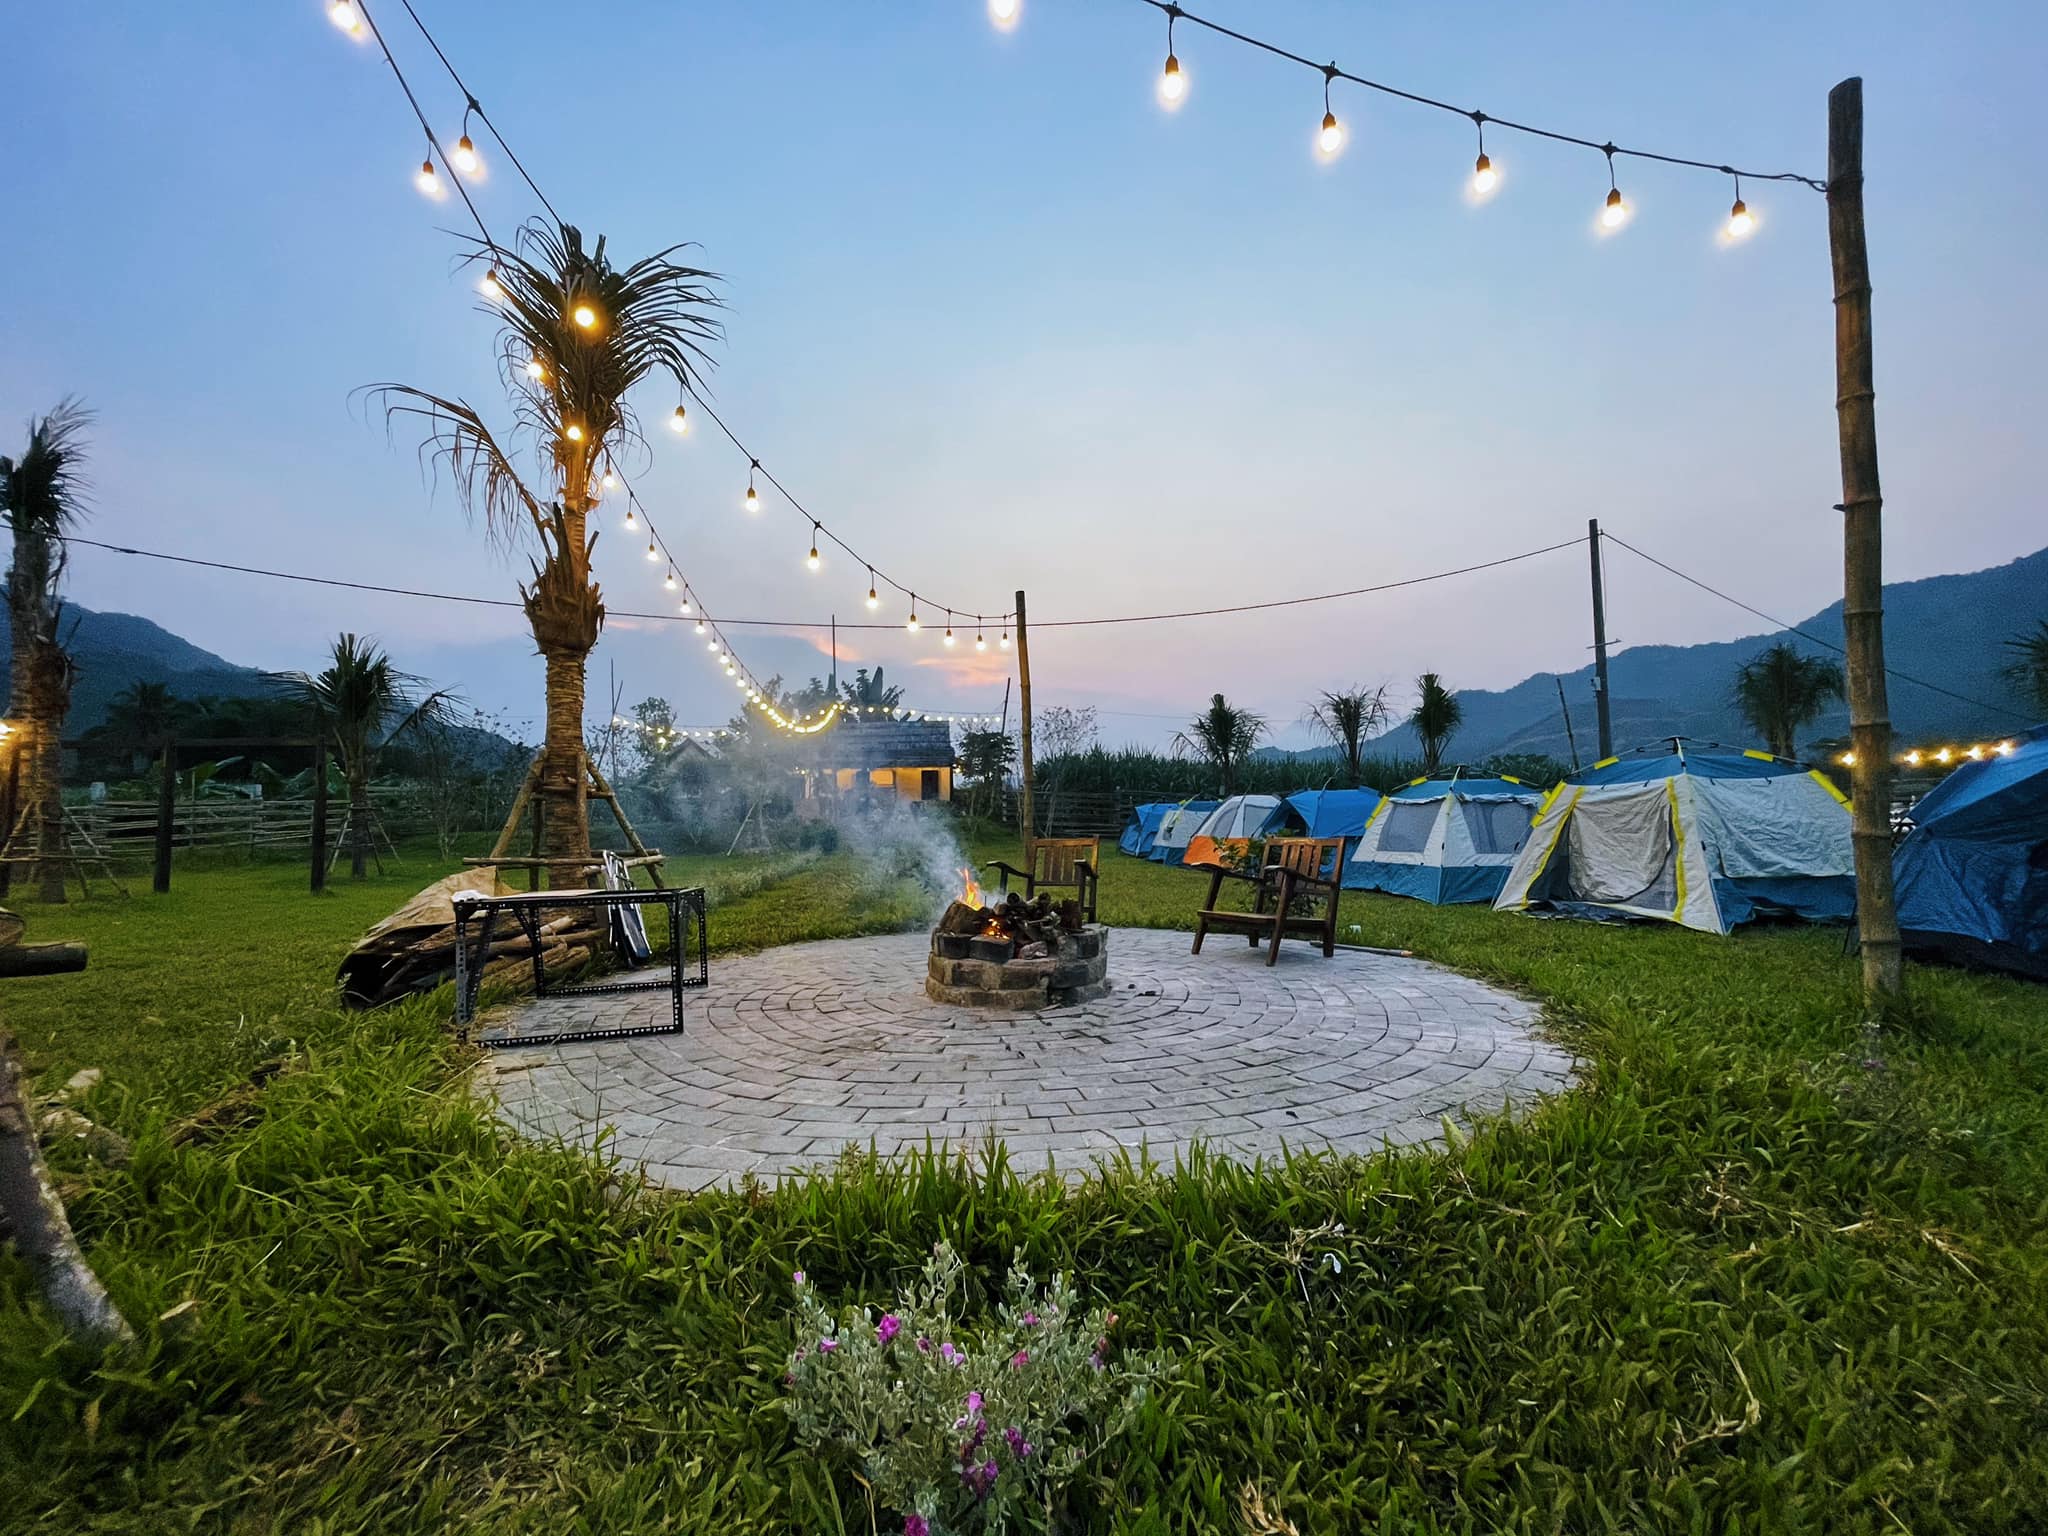 Hoà Bắc Ecologde – Camping Space Art – Đà Nẵng